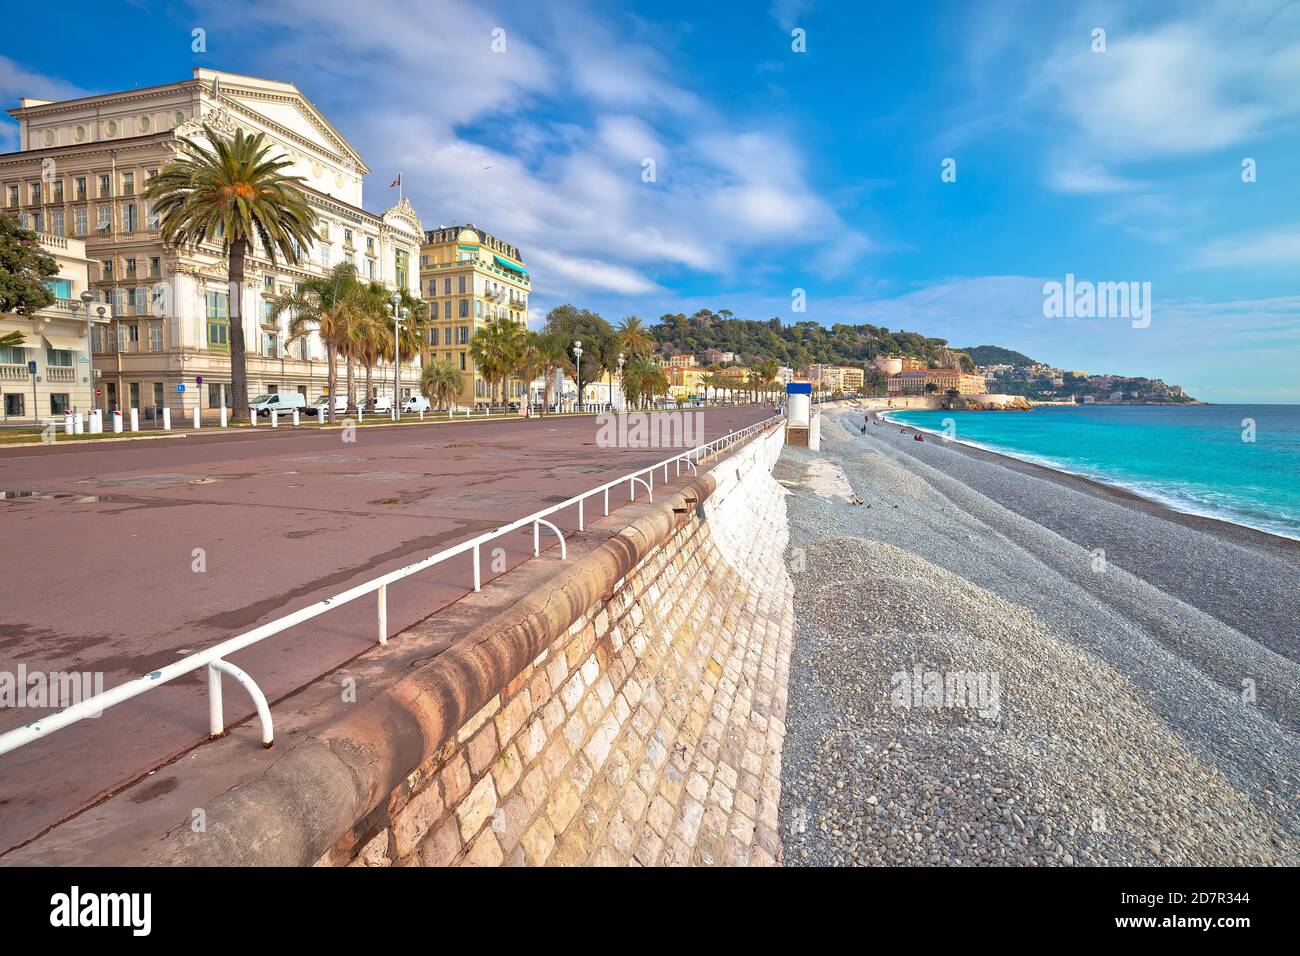 Passeggiata inglese famosa passerella e spiaggia nella città di Nizza, costa azzurra, Alpi Marittime, Francia Foto Stock